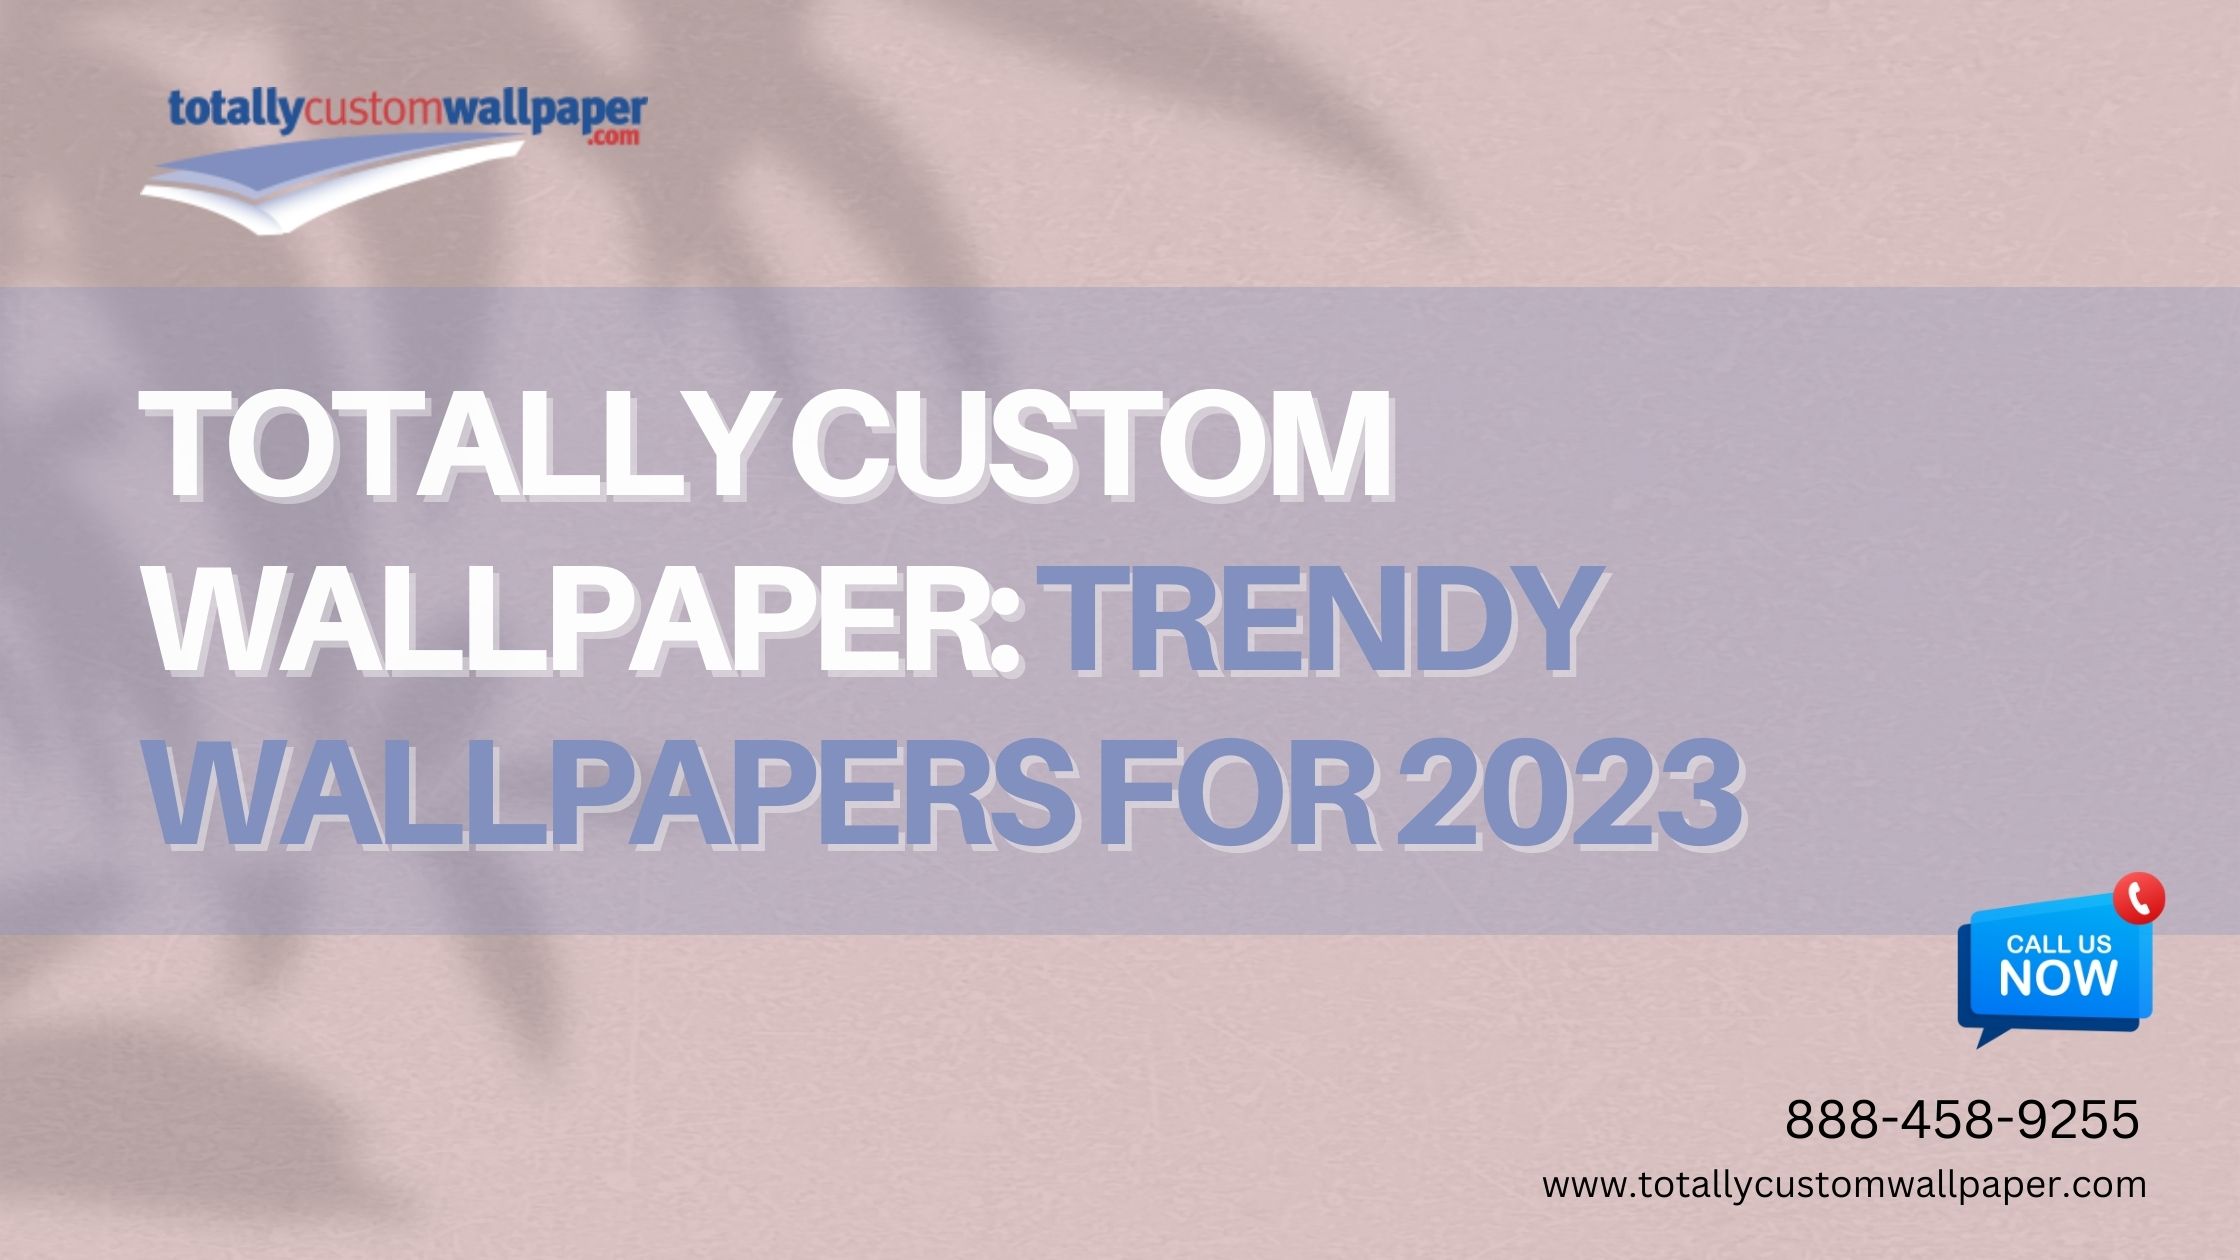 totally custom wallpaper trendy wallpapers for 2023